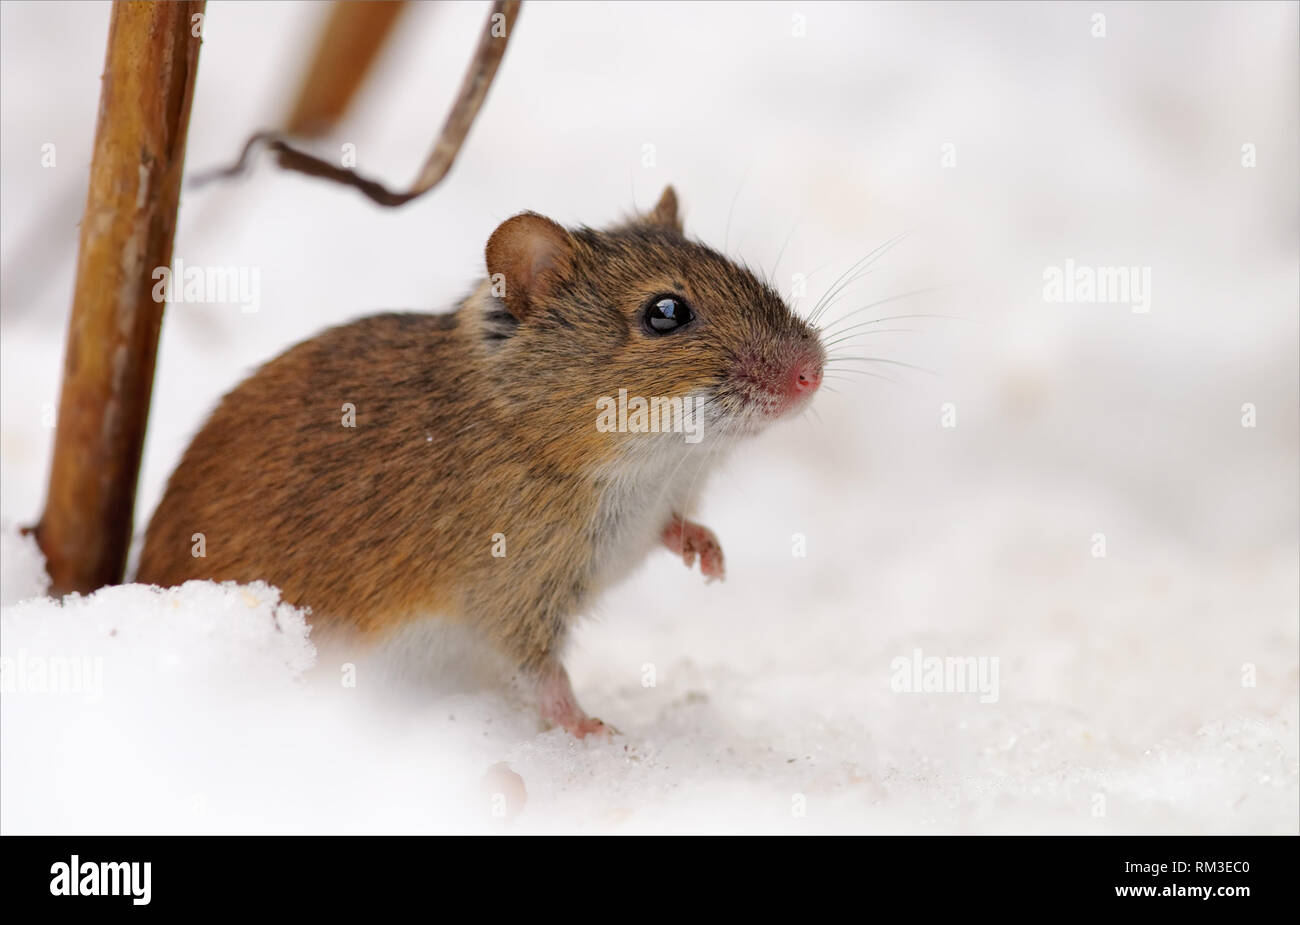 Strisce campo mouse si siede vicino al suo foro della neve nella stagione invernale con zampa sollevata Foto Stock